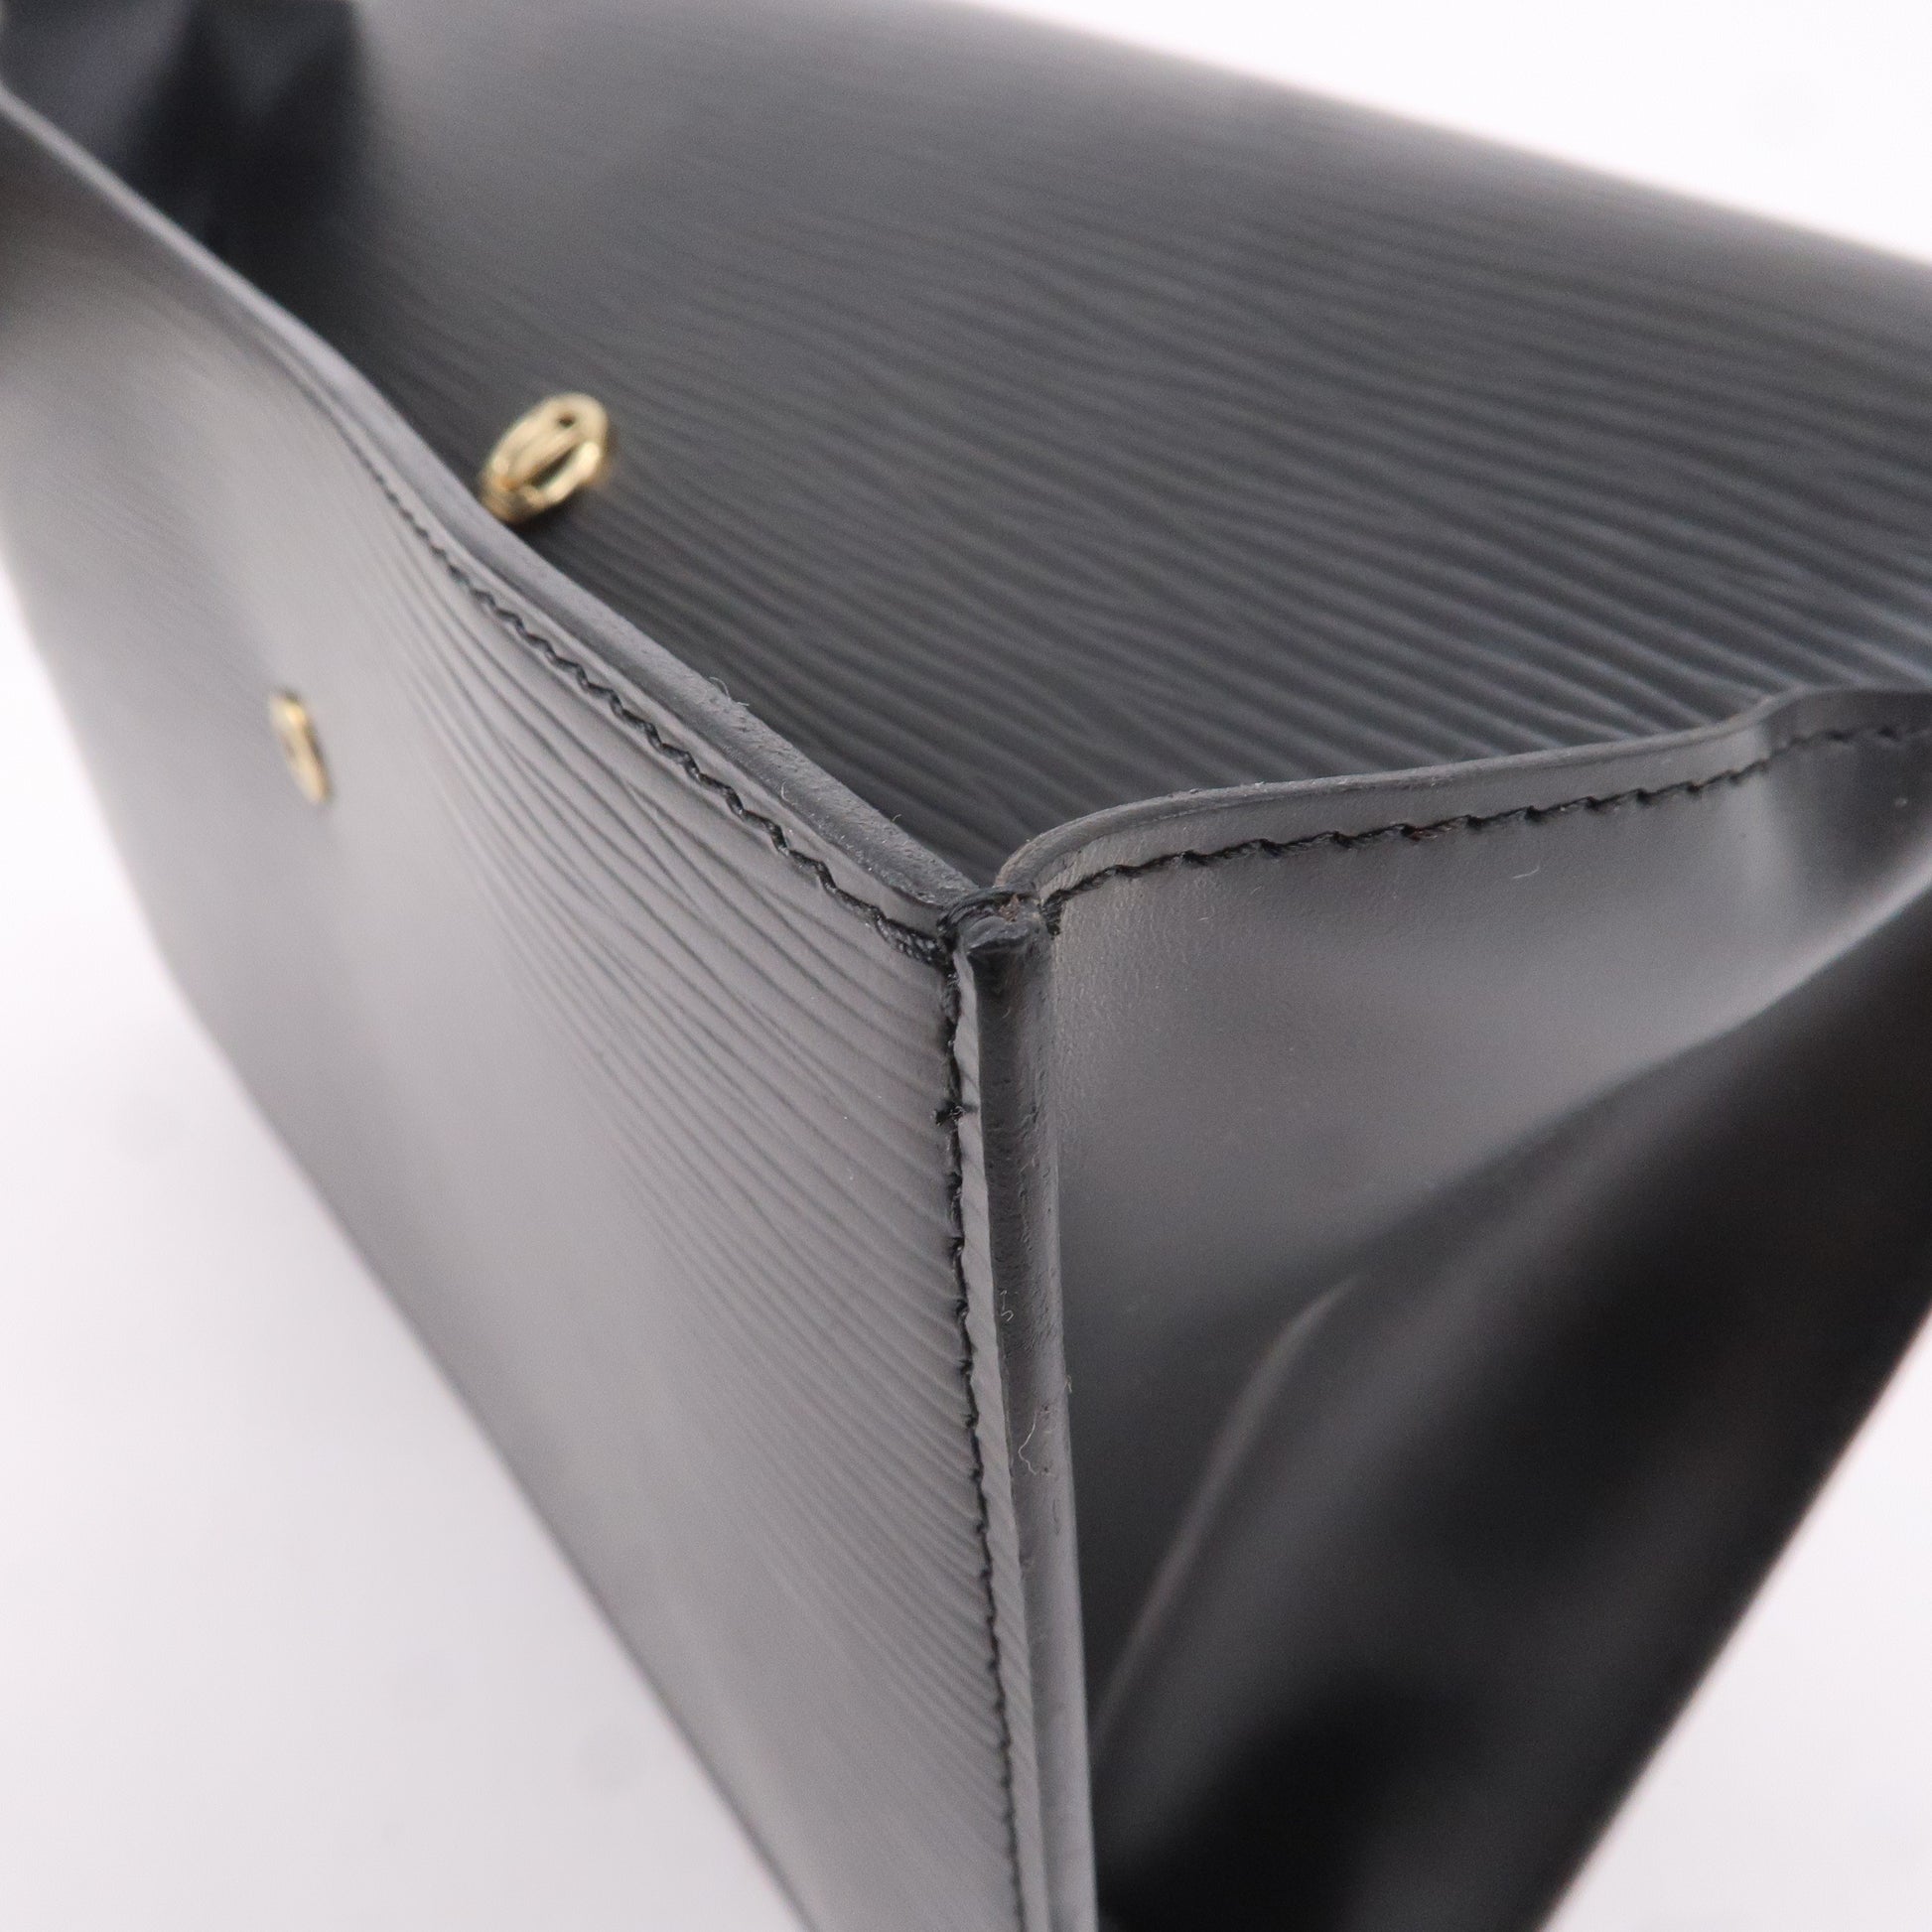 Authentic Louis Vuitton Black Epi Montaigne Clutch Bag